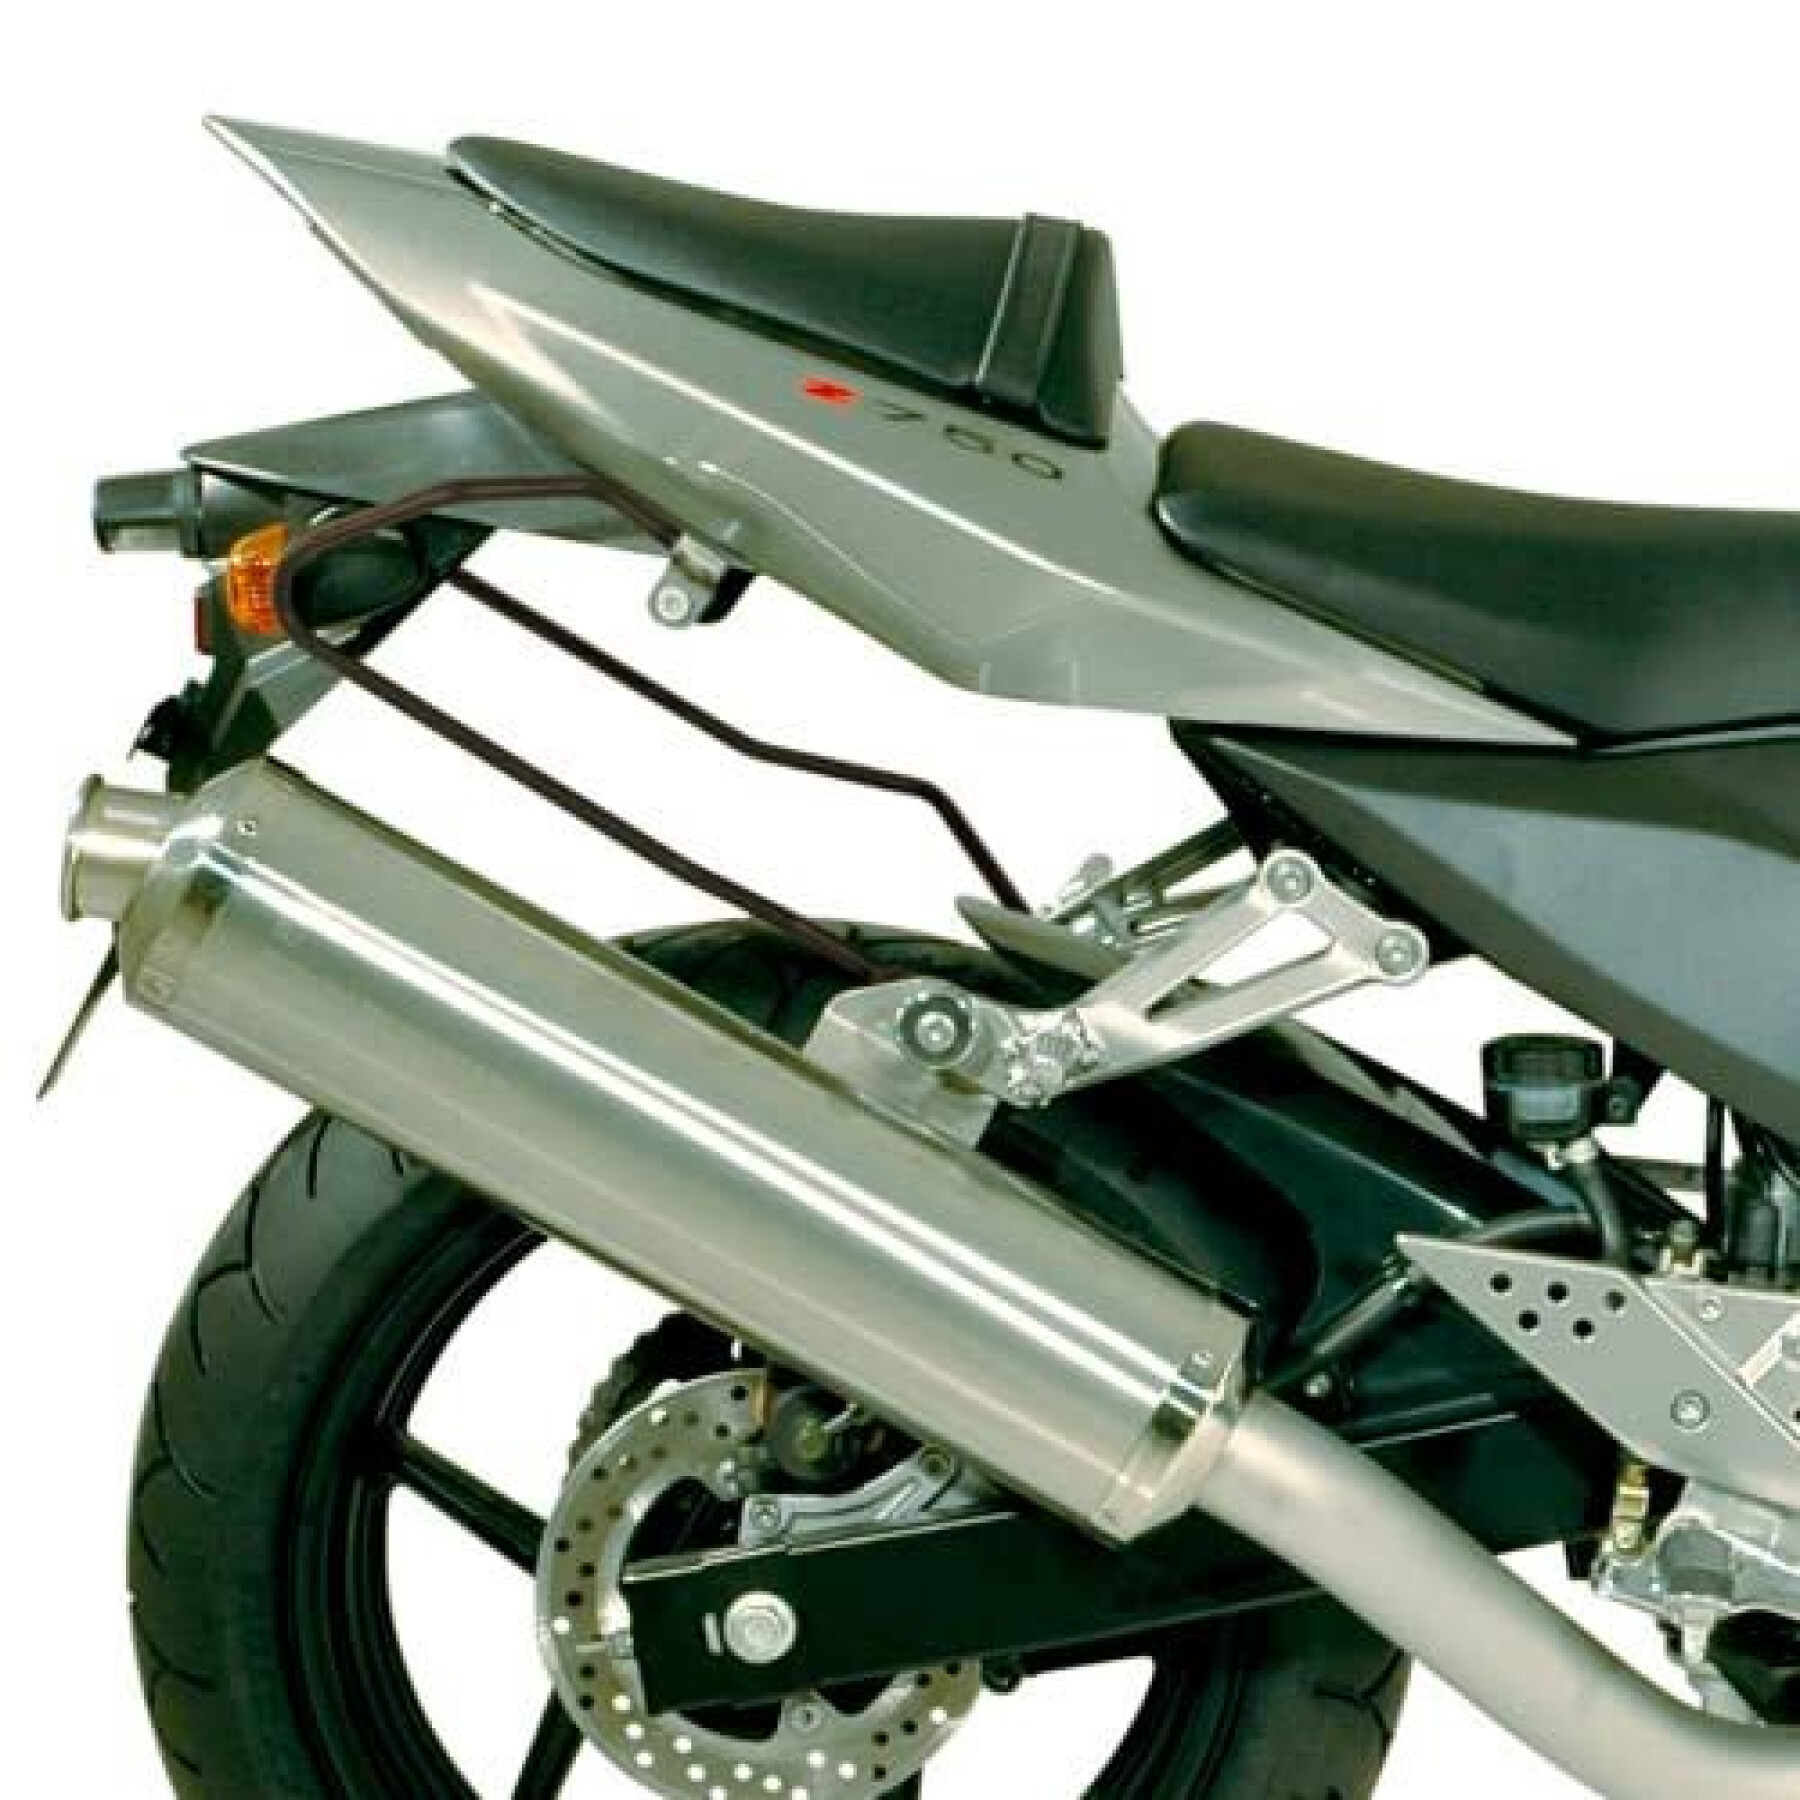 Spreizer für Motorrad-Reittaschen Givi MT501S Honda CMX 500 Rebel (17 à 20)